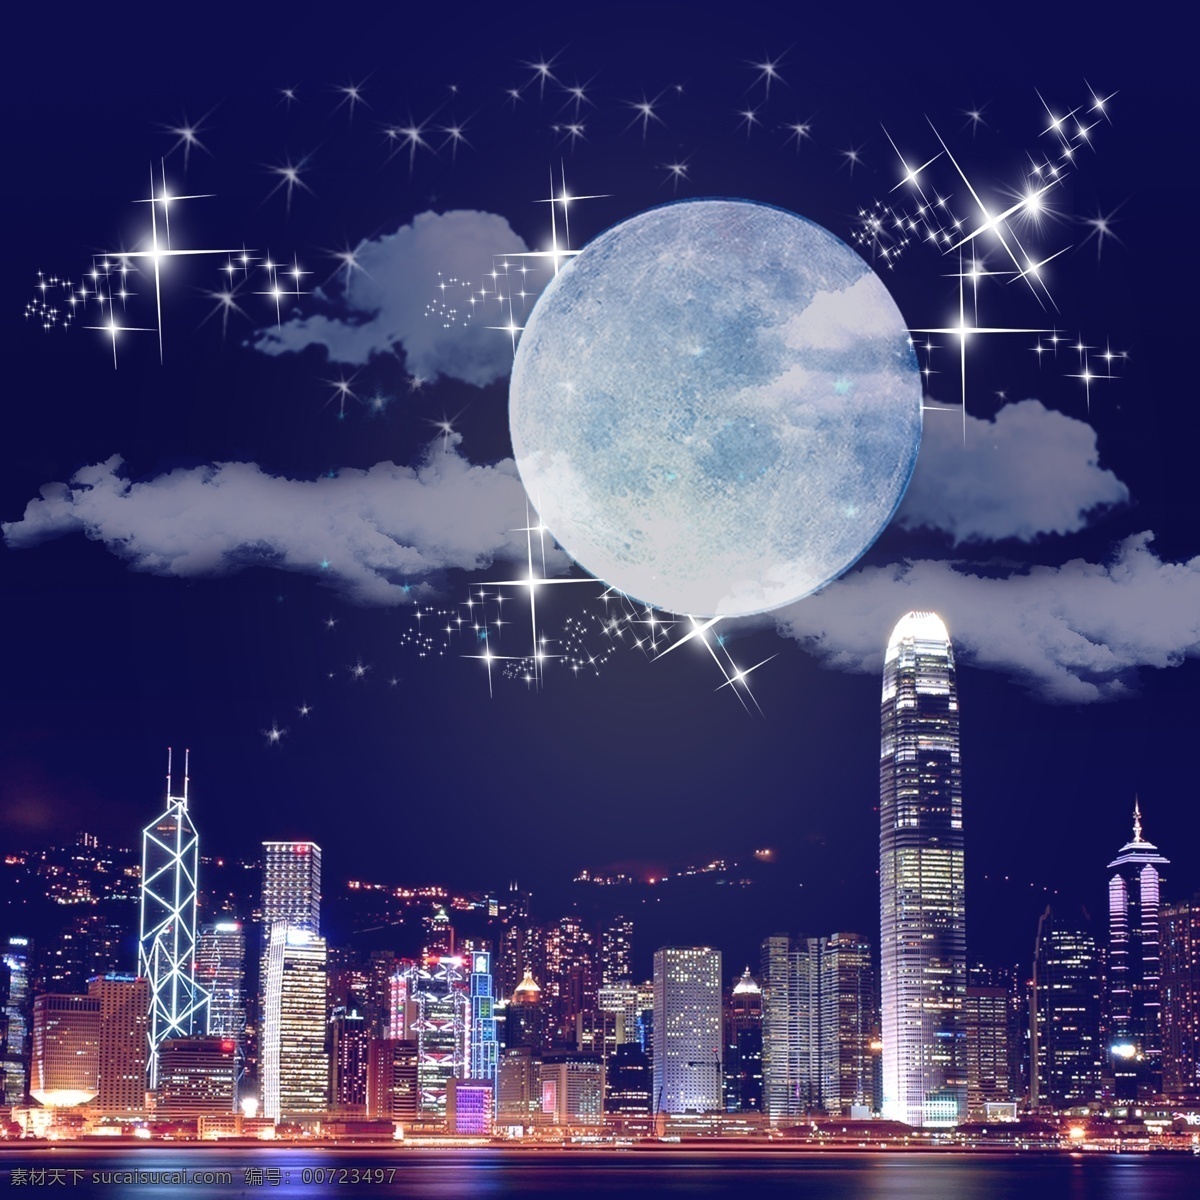 香港 国际 大都市 夜空 香港夜空 维多利亚港口 月亮 白云 璀璨的星空 星光 熠熠 港口 上空 美景 黑色